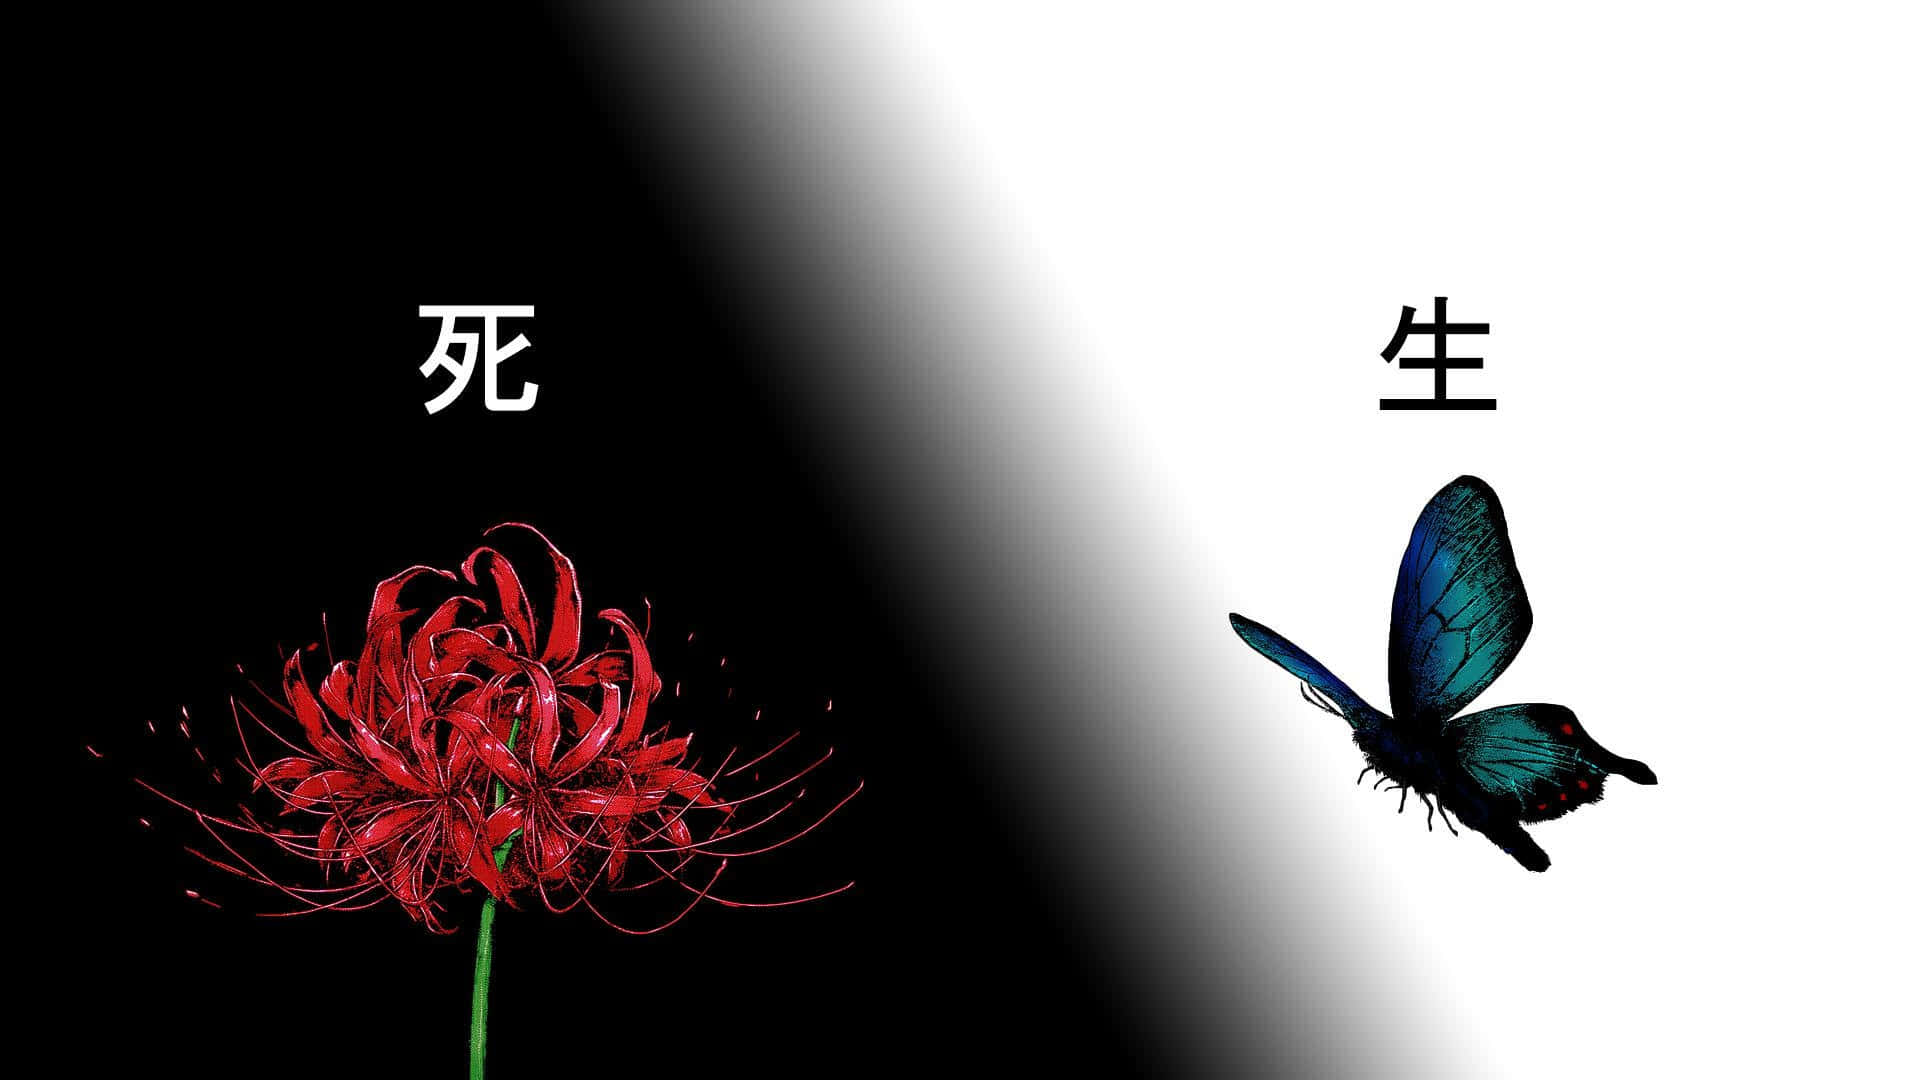 Tokyo Ghoul Flower&Butterfly Wallpaper